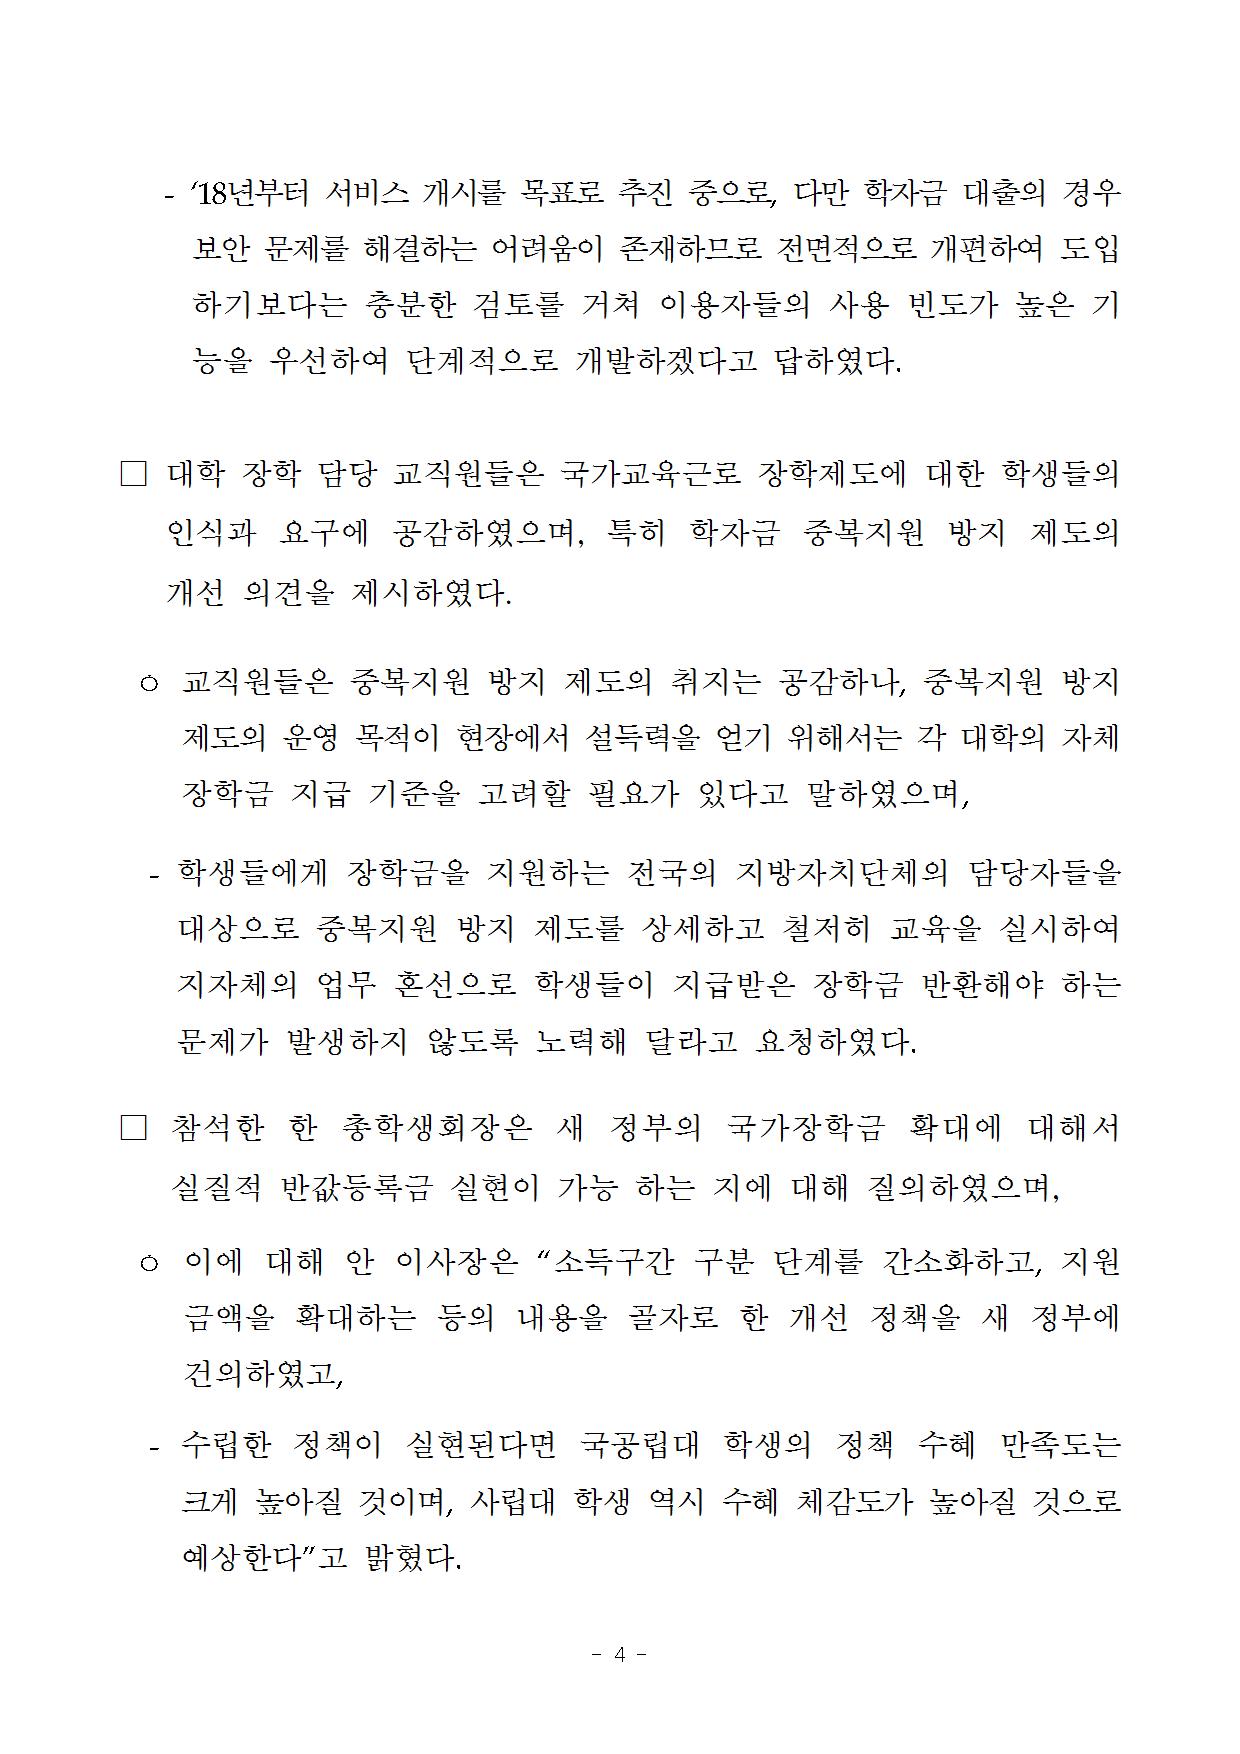 06-23(금)[보도자료] 강원권역 현장 소통 간담회 개최004.jpg